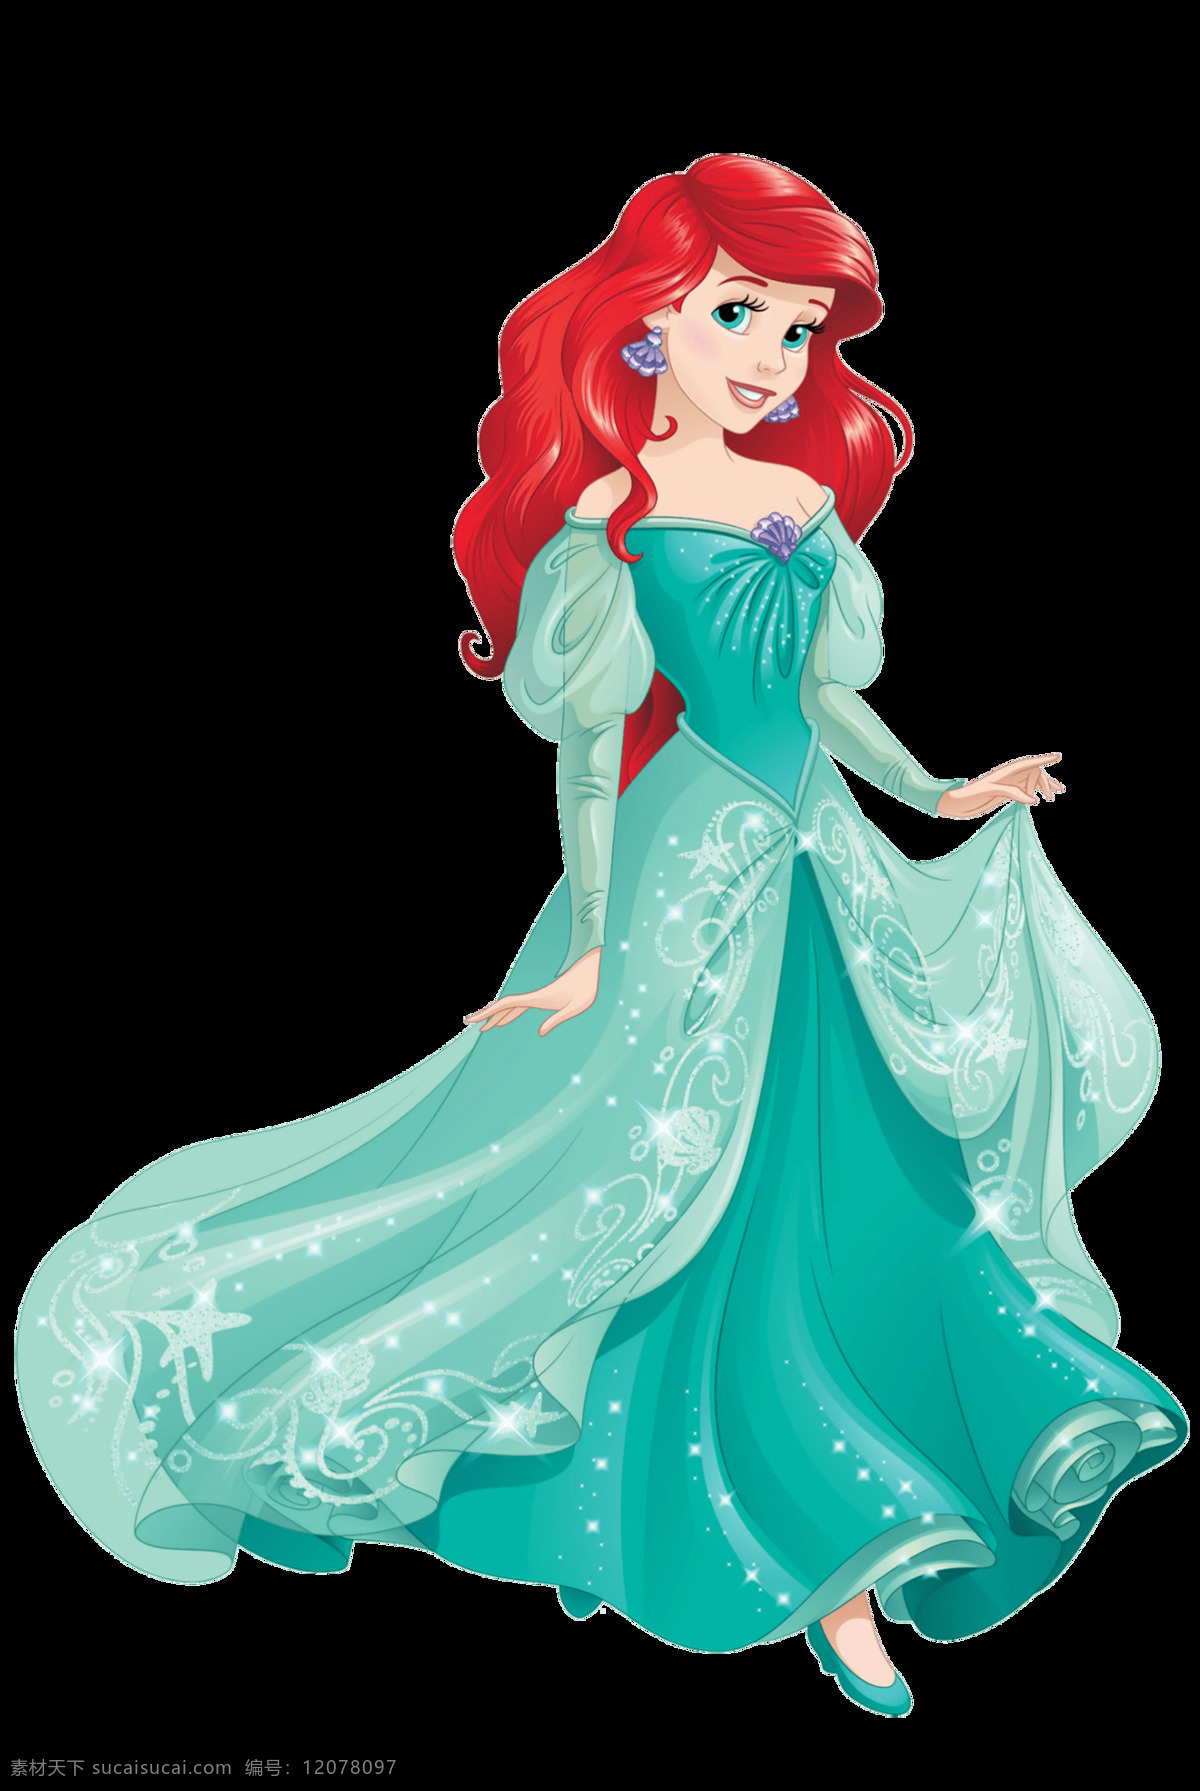 爱丽儿公主 ariel princesse 迪士尼公主 公主 爱丽儿 动漫动画 动漫人物